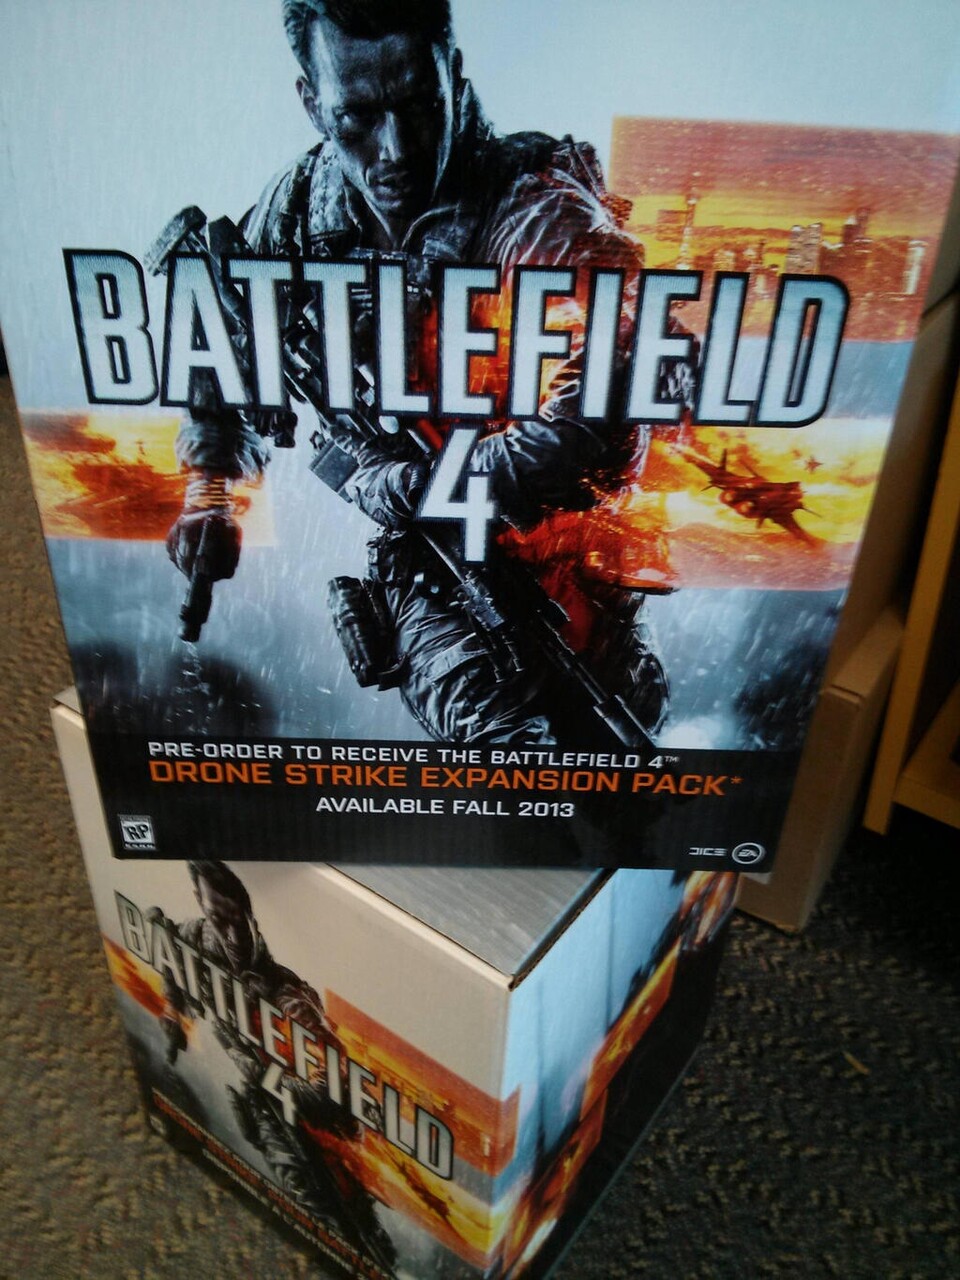 Auf diesem Battlefield-4-Plakat wird »Drone Strike« beworben.